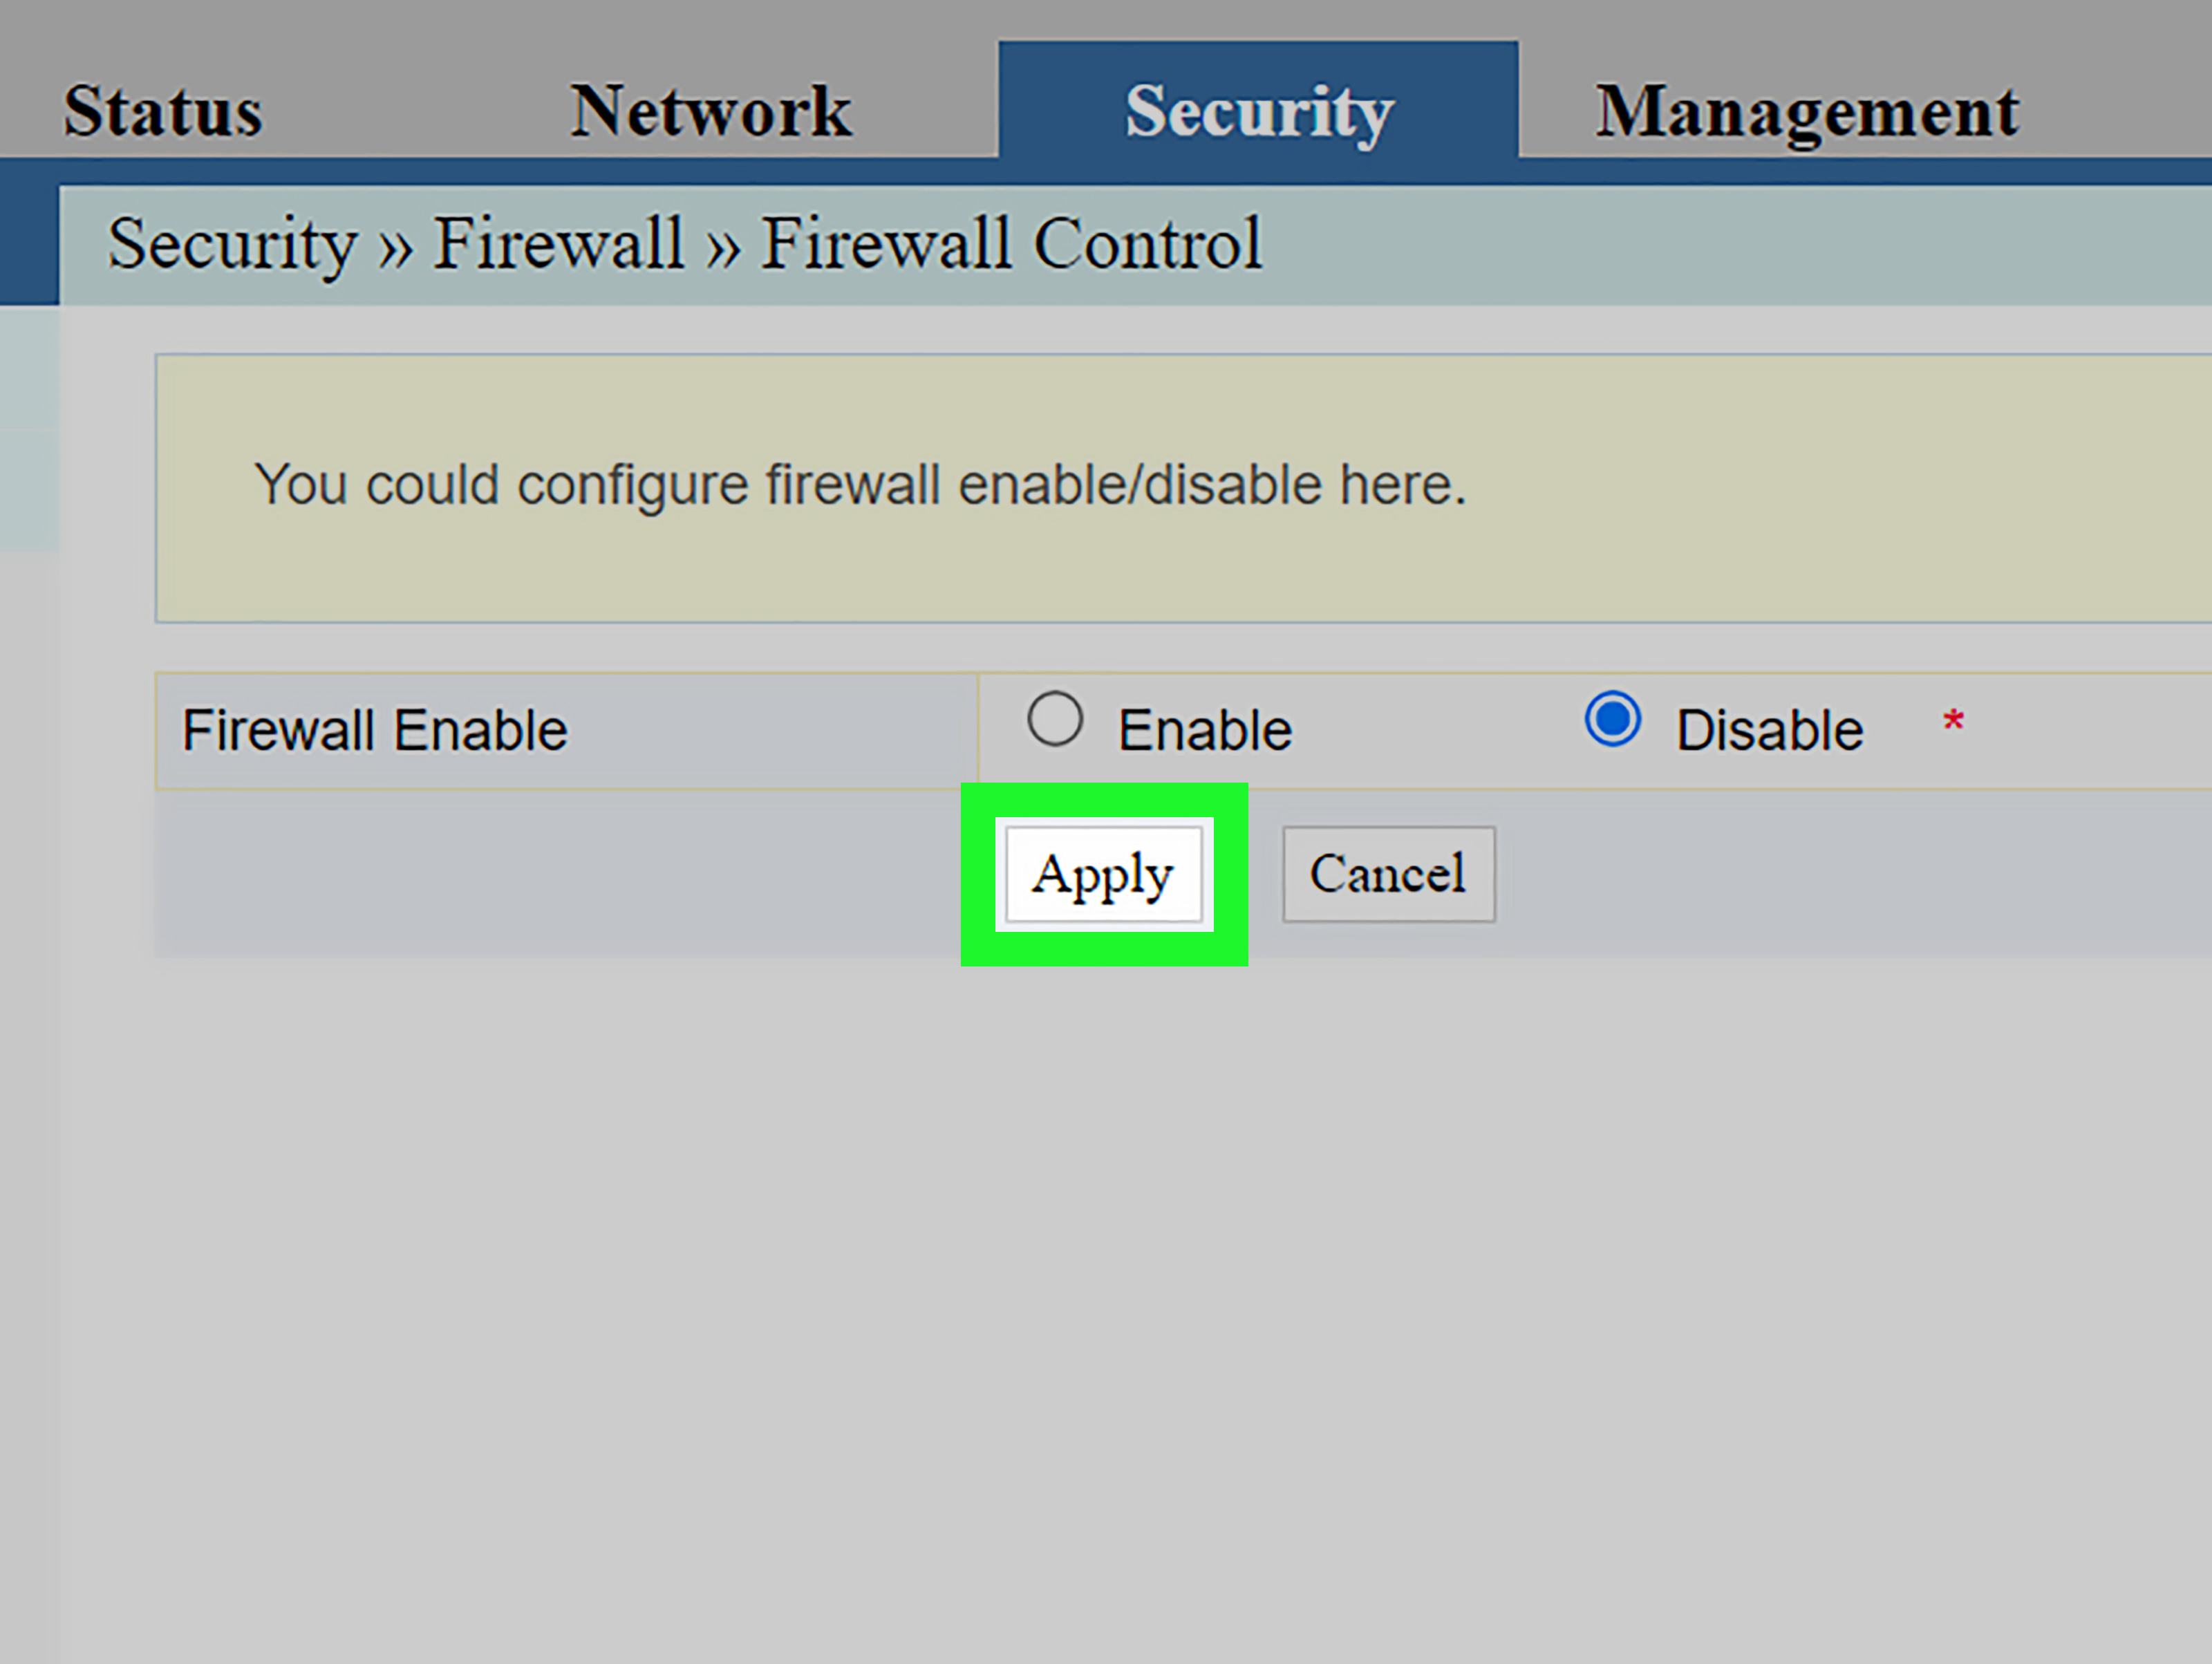 Disable Antivirus/Firewall
Restart Router/Modem